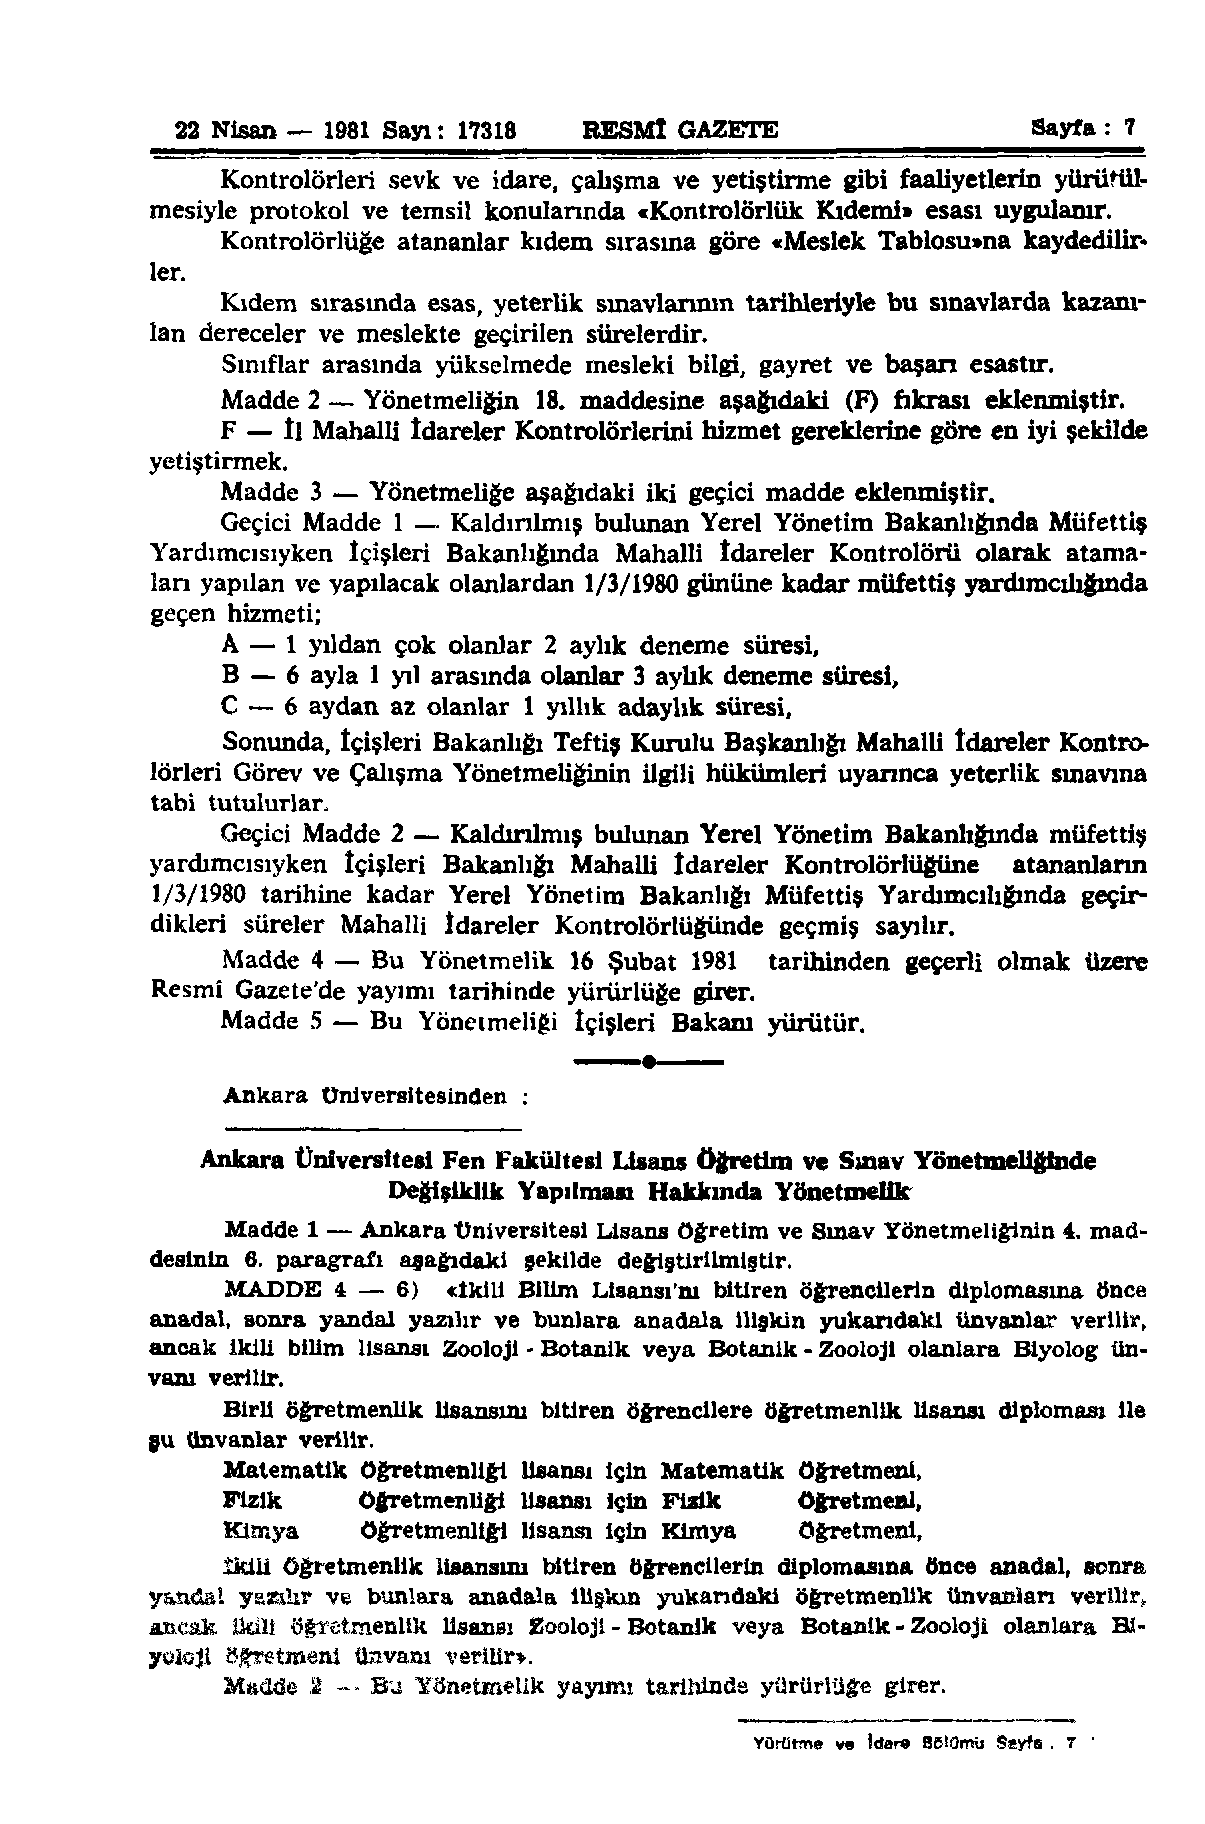 22 Nisan 1981 Sayı: 17318 RESMÎ GAZETE Sayfa: 7 Kontrolörleri sevk ve idare, çalışma ve yetiştirme gibi faaliyetlerin yürütülmesiyle protokol ve temsil konularında «Kontrolörlük Kıdemi» esası